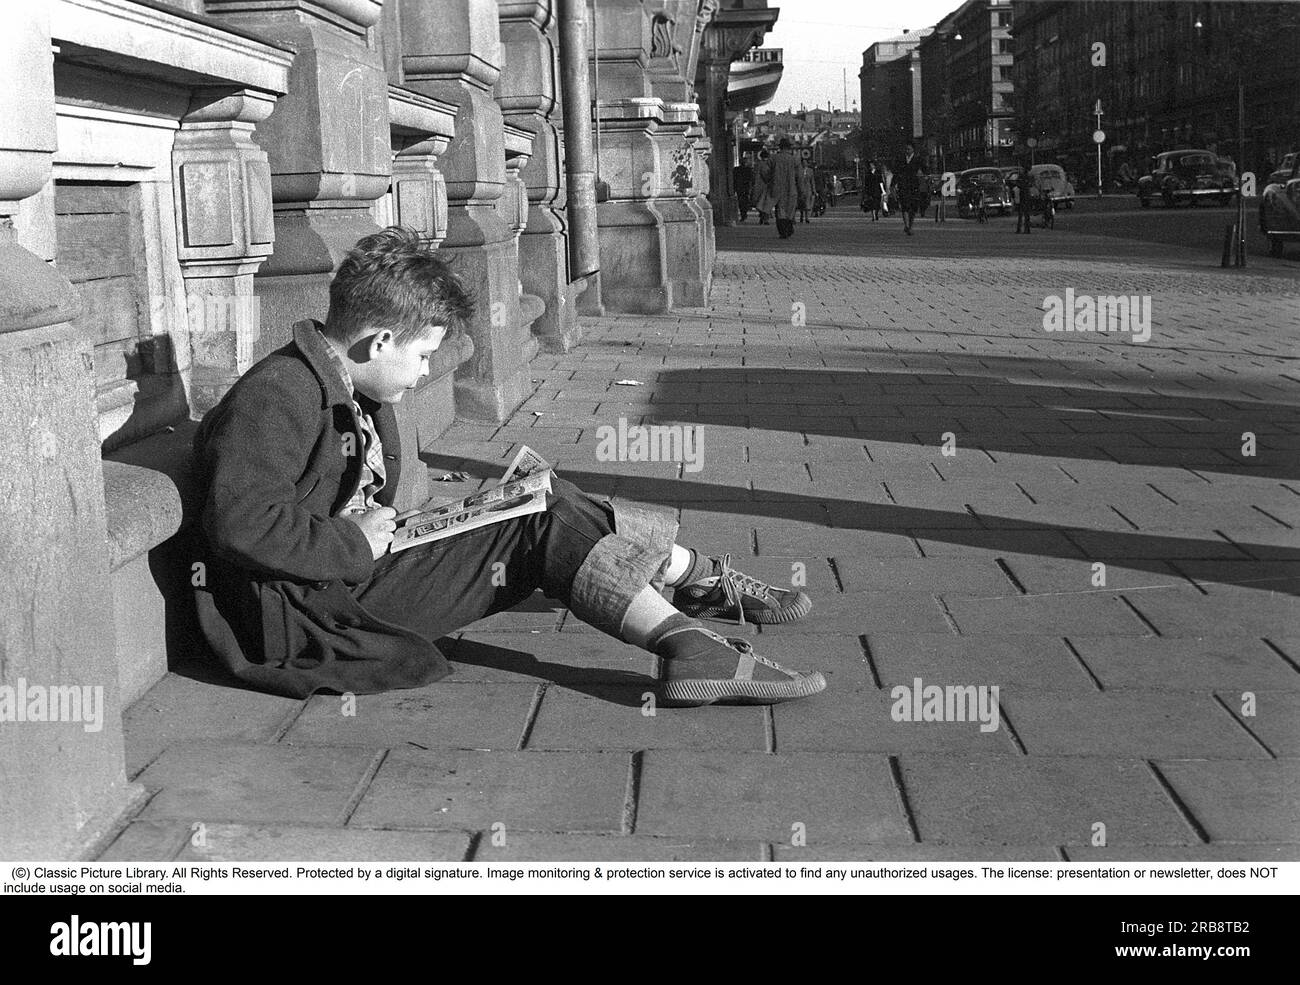 Stockholm dans les années 1950 Un garçon est assis à l'extérieur du bâtiment de l'éditeur Bonnier à Sveavägen 56 et lit une bande dessinée. L'année est 1953. Cinema Riviera peut être vu un peu plus loin dans la rue Sveavägen 52. Le plus à droite se trouve le Konserthuset à l'intersection de Kungsgatan. Avec la sortie de Kalle Anka & C:o et Seriemagasinet en 1948, le phénomène de la bande dessinée a pris son envol en Suède. Après un boom dans les années 1950, le développement a quelque peu ralenti, en partie parce que le débat sur les séries américaines a également atteint la Suède. Au cours des années 1950 et 60, les bandes dessinées ont commencé à être considérées comme 'inap Banque D'Images